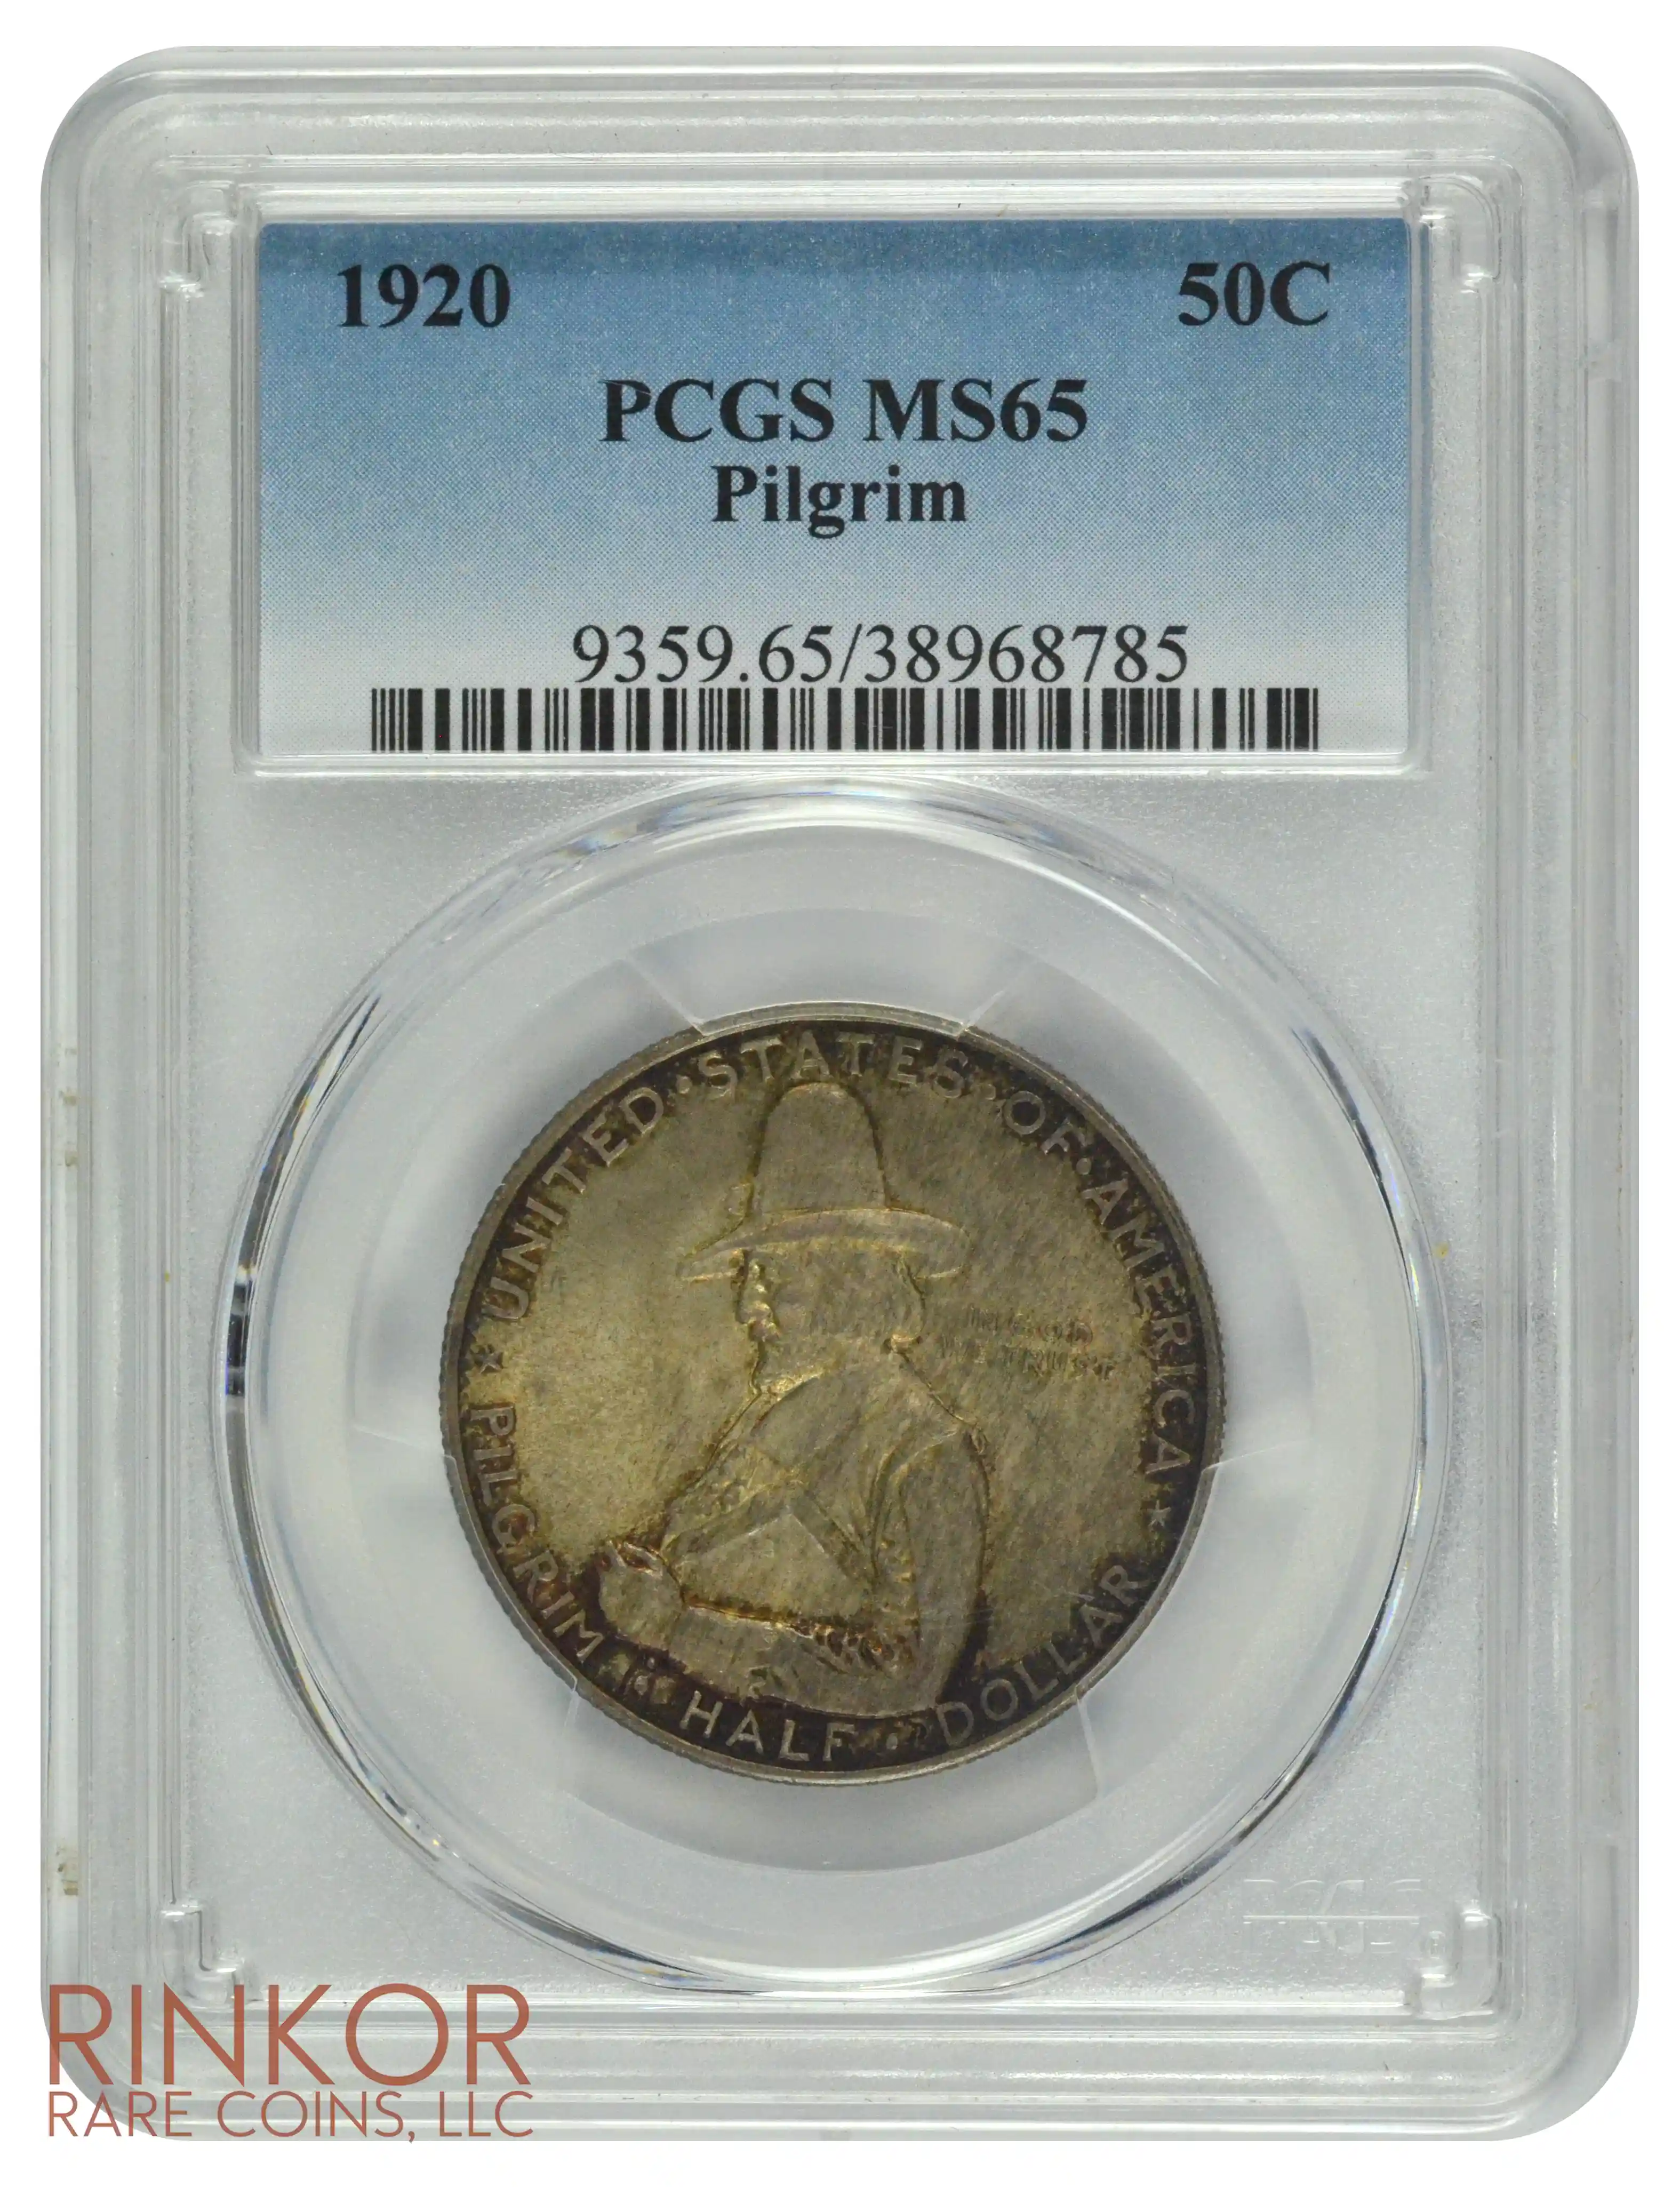 1920 Pilgrim Commemorative Half Dollar PCGS MS 65